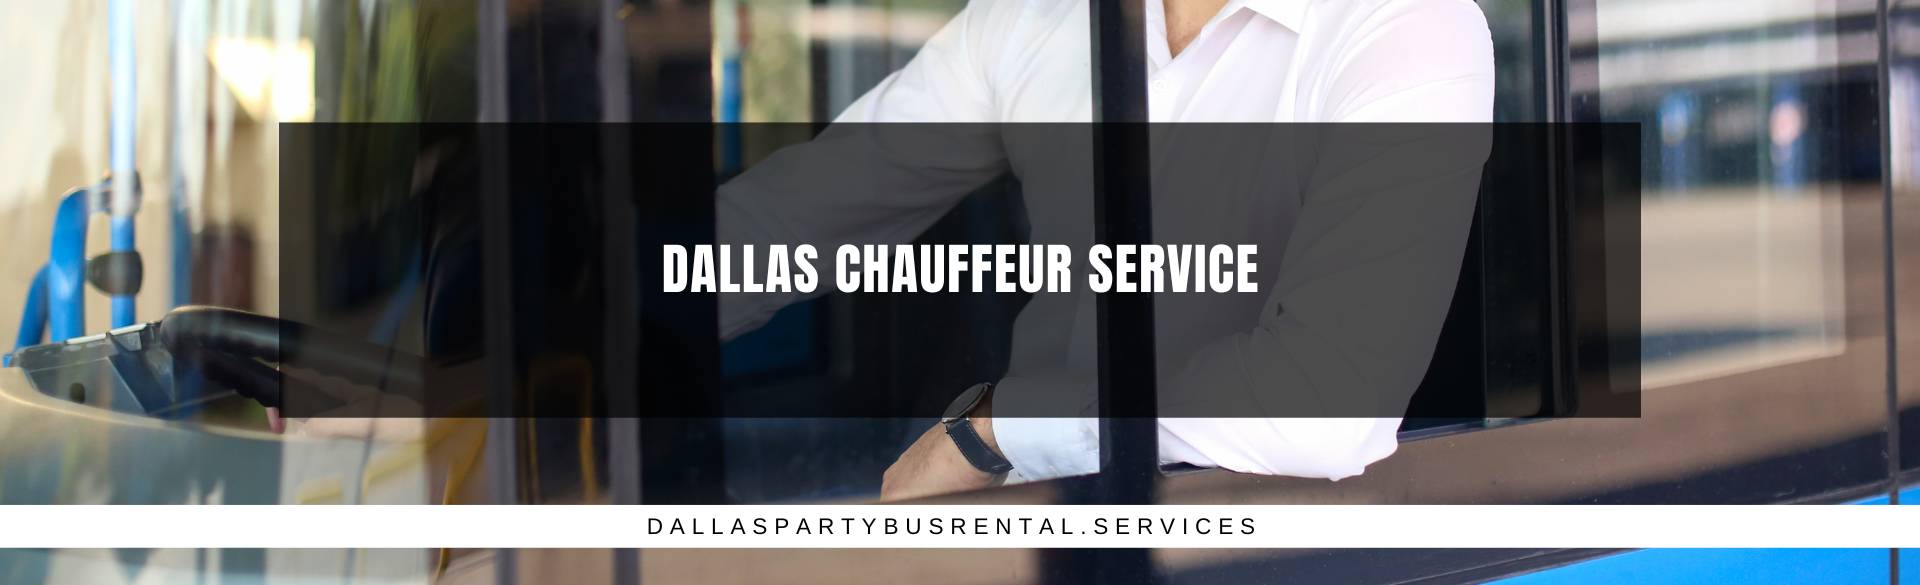 Dallas Chauffeur Service